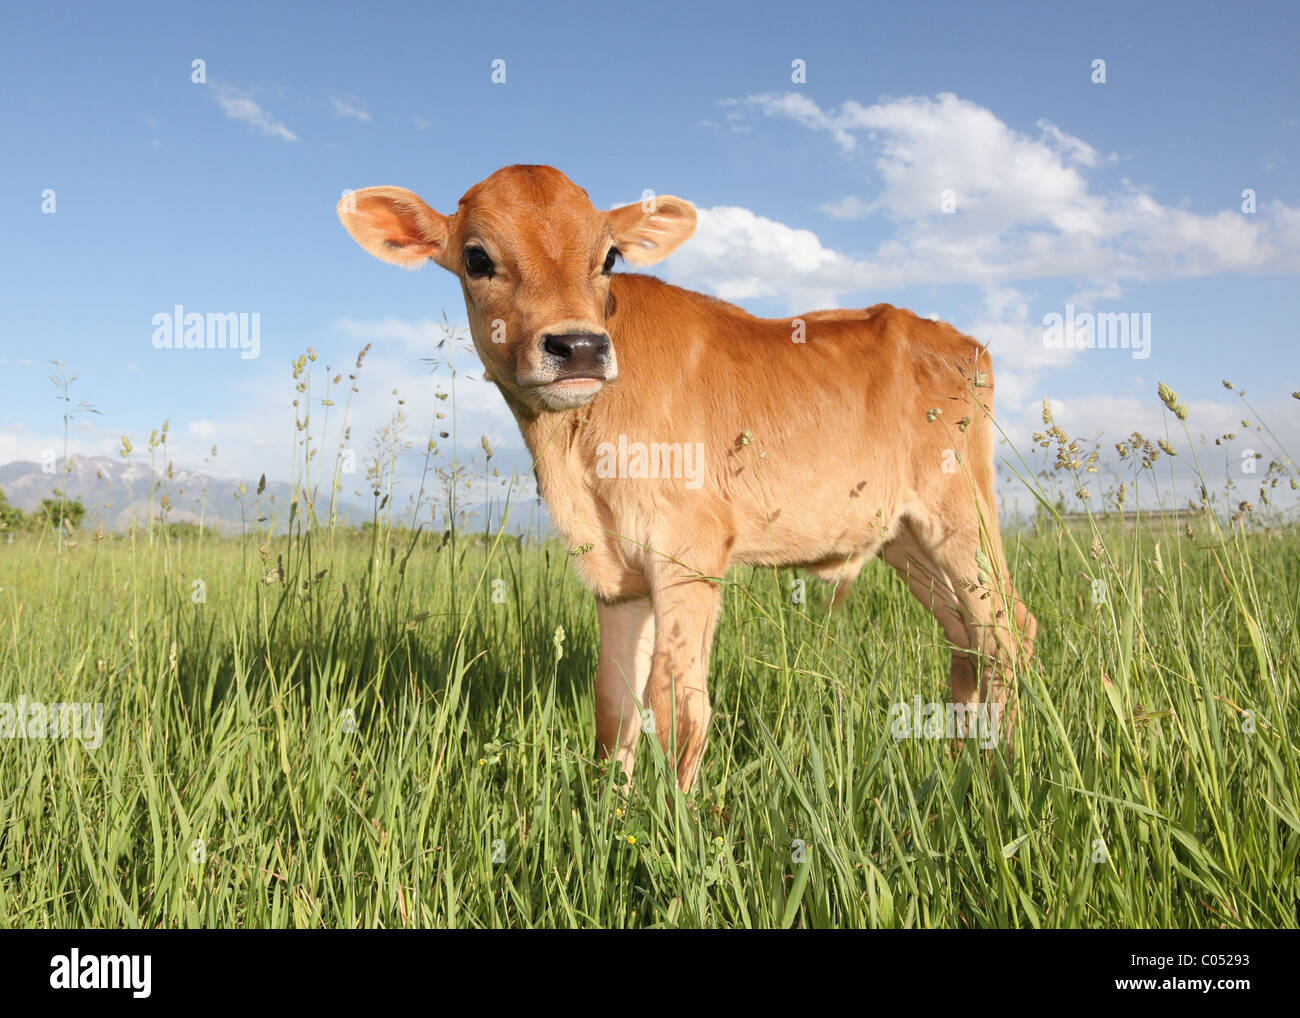 Baby cow standing dans domaine de l'herbe longue Banque D'Images